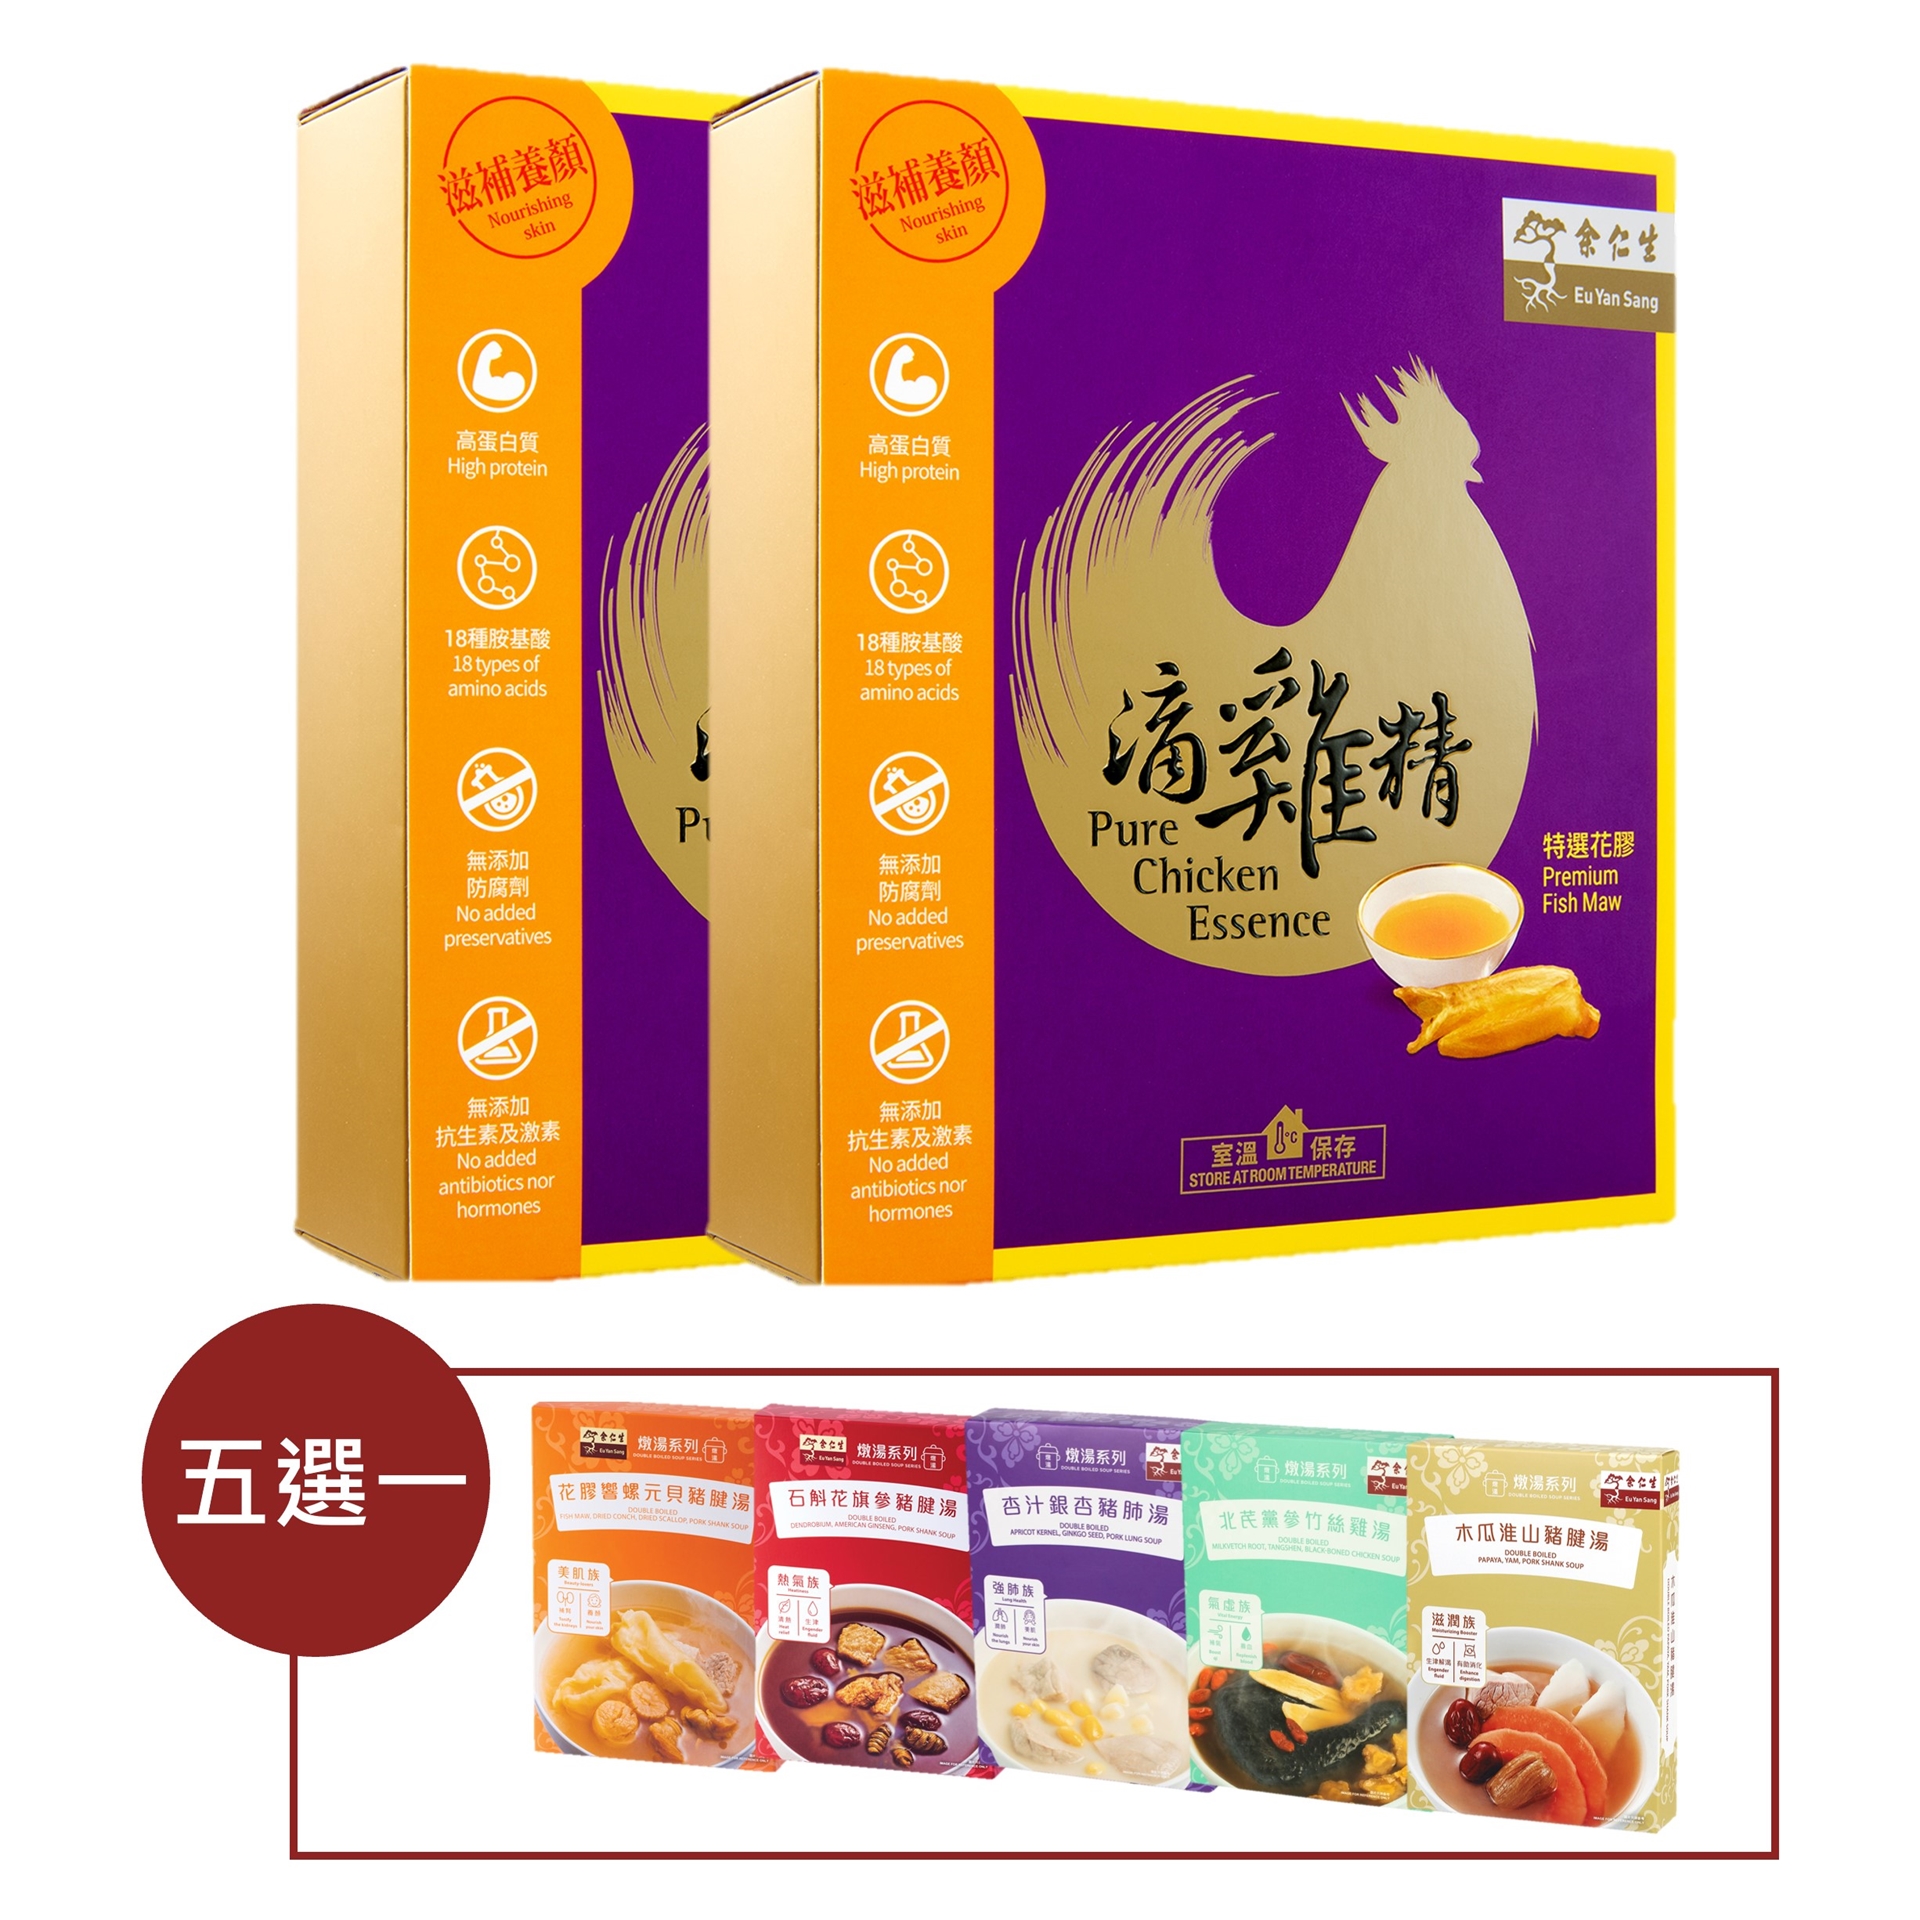 余仁生花膠滴雞精(6包裝)2盒送即食燉湯1盒